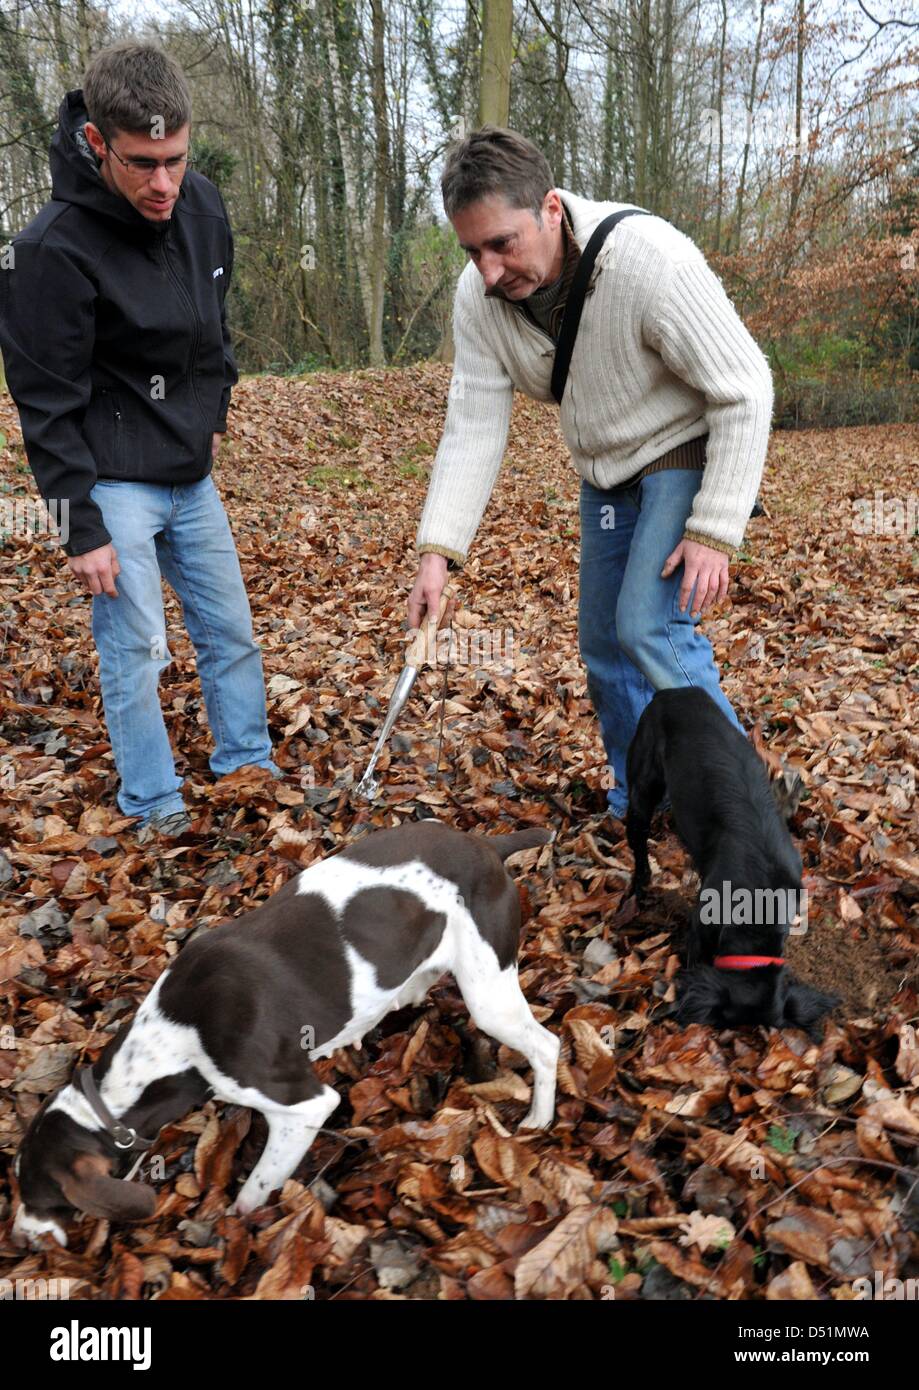 Trüffel-Experten Ludger Sproll (R) und Ulrich Stobbe (L) suchen schwarze  Burgunder Trüffel mit ihren Hunden Diana und Zara in einem Buche Hain in  der Nähe von Freiburg, Deutschland, 25. November 2010. Stobbe